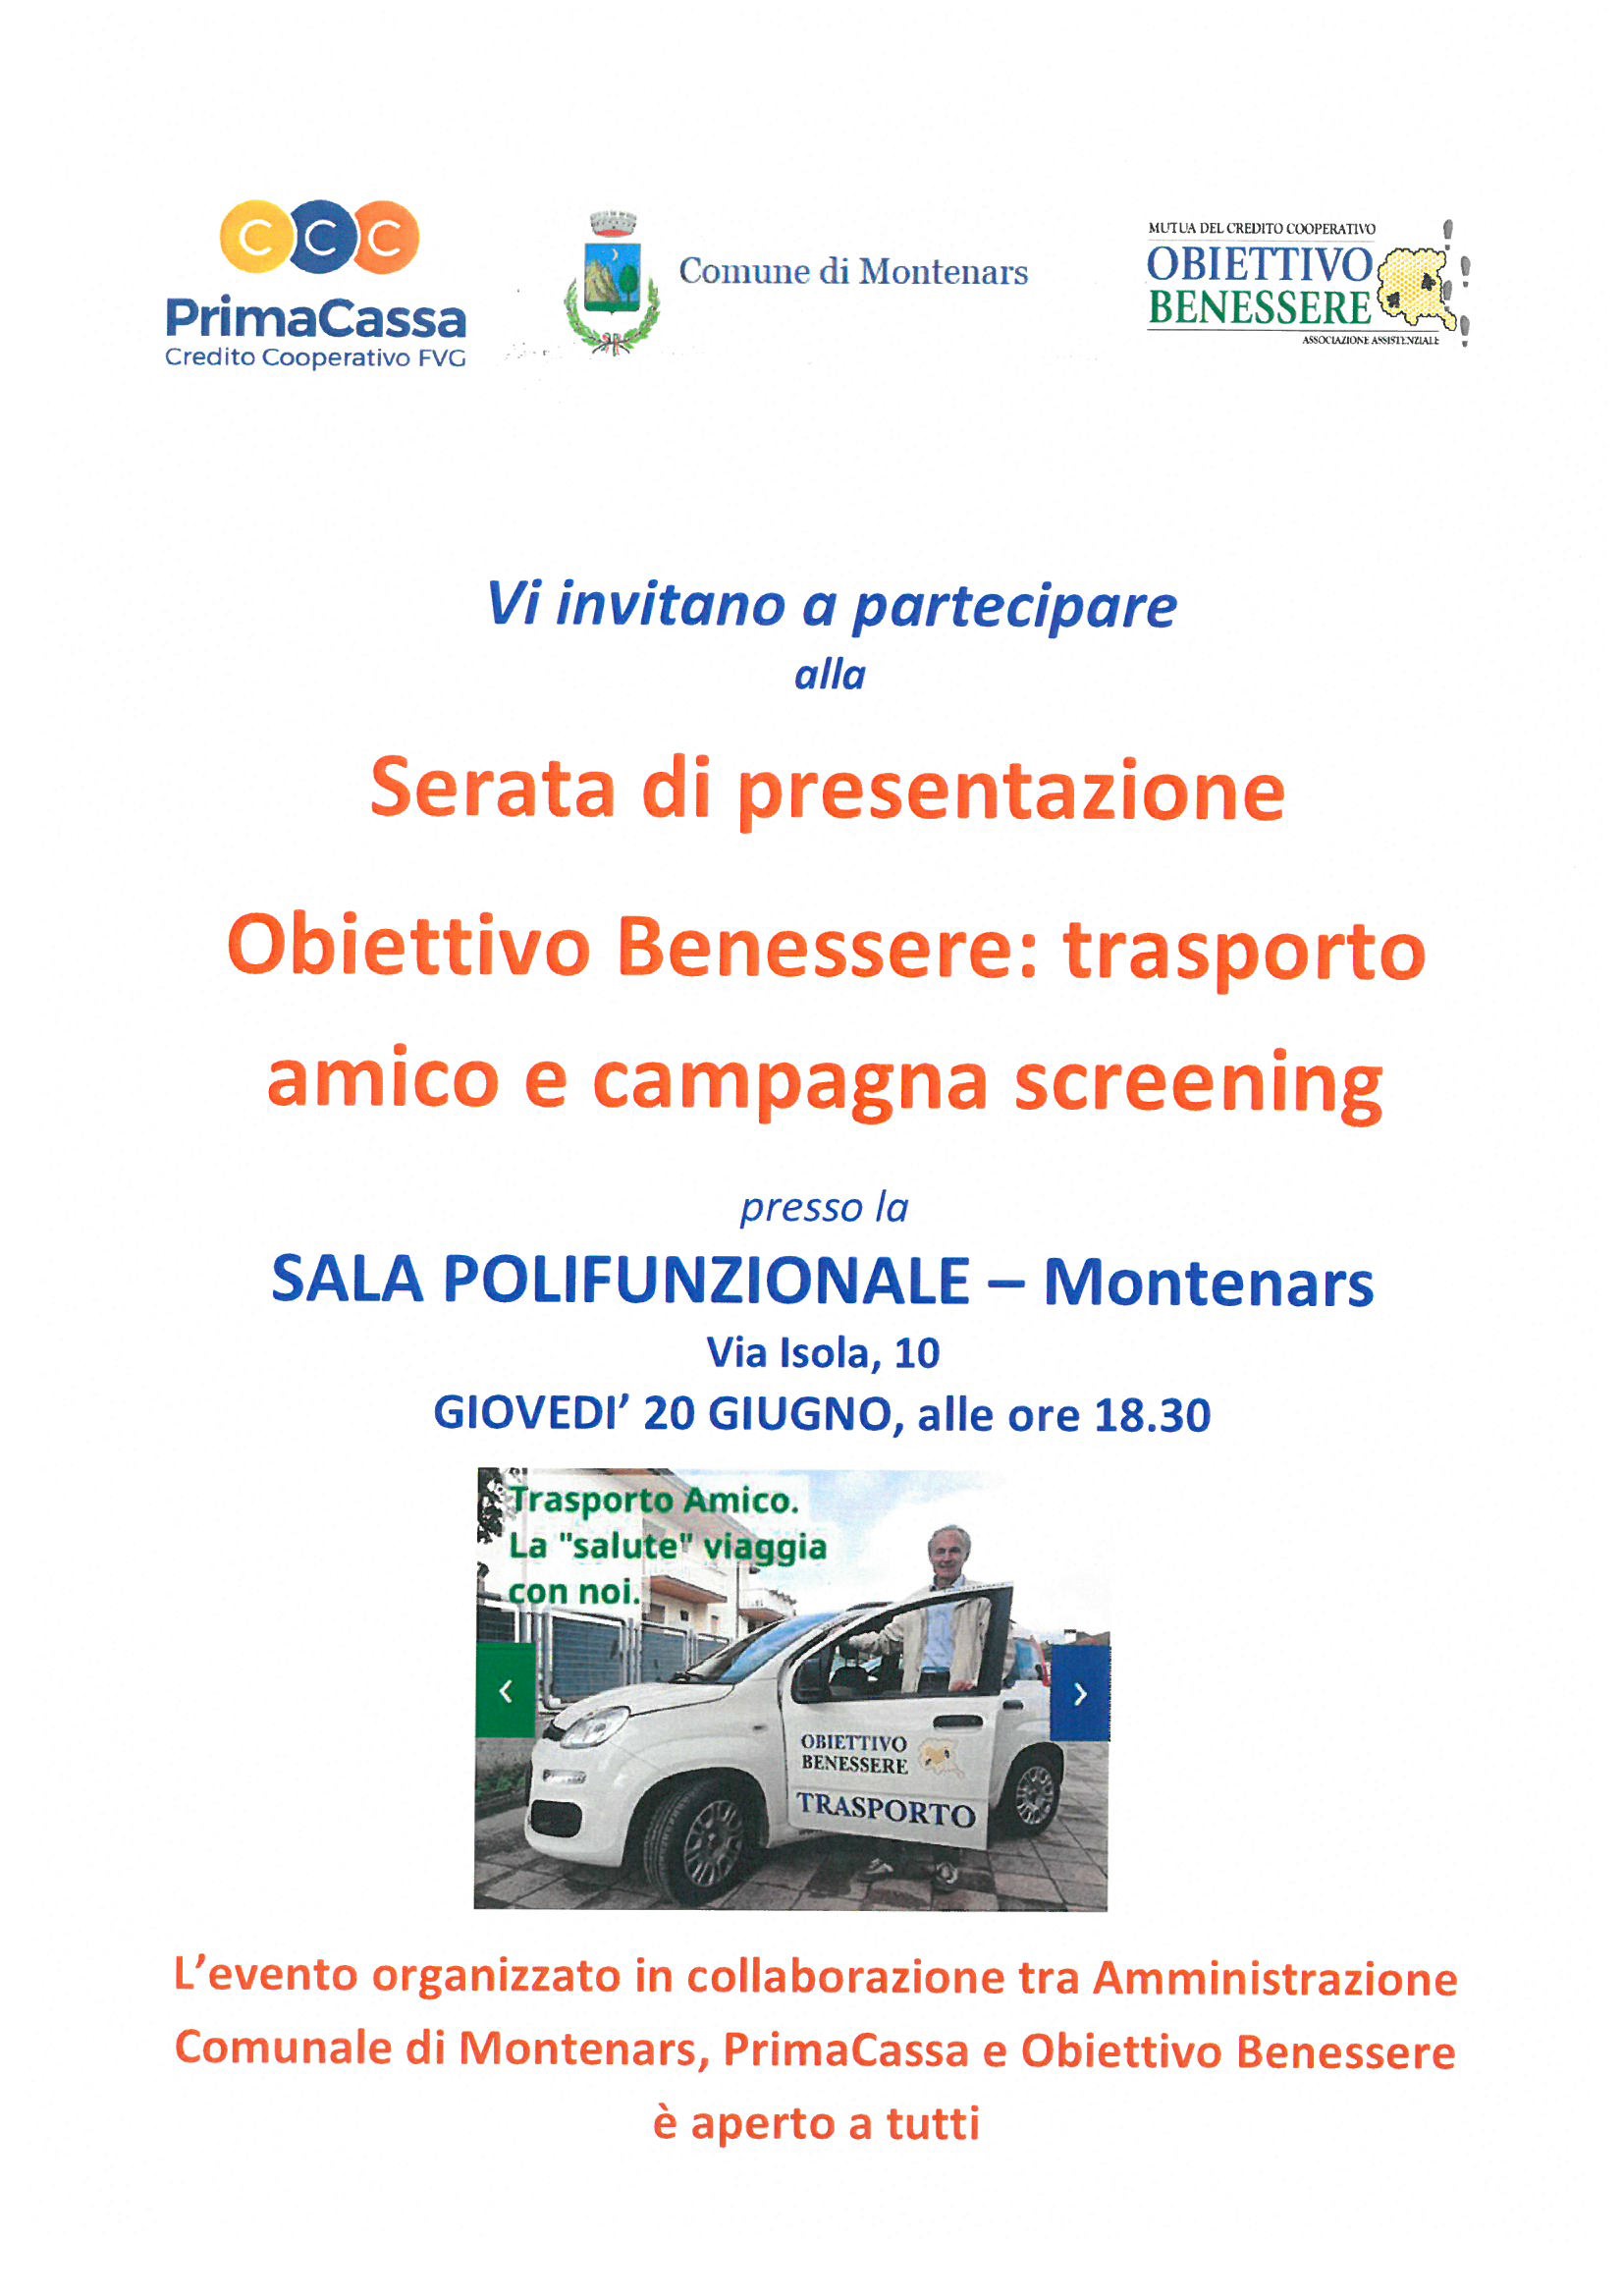 Serata di presentazione Obiettivo Benessere: Trasporto Amico e campagna screening